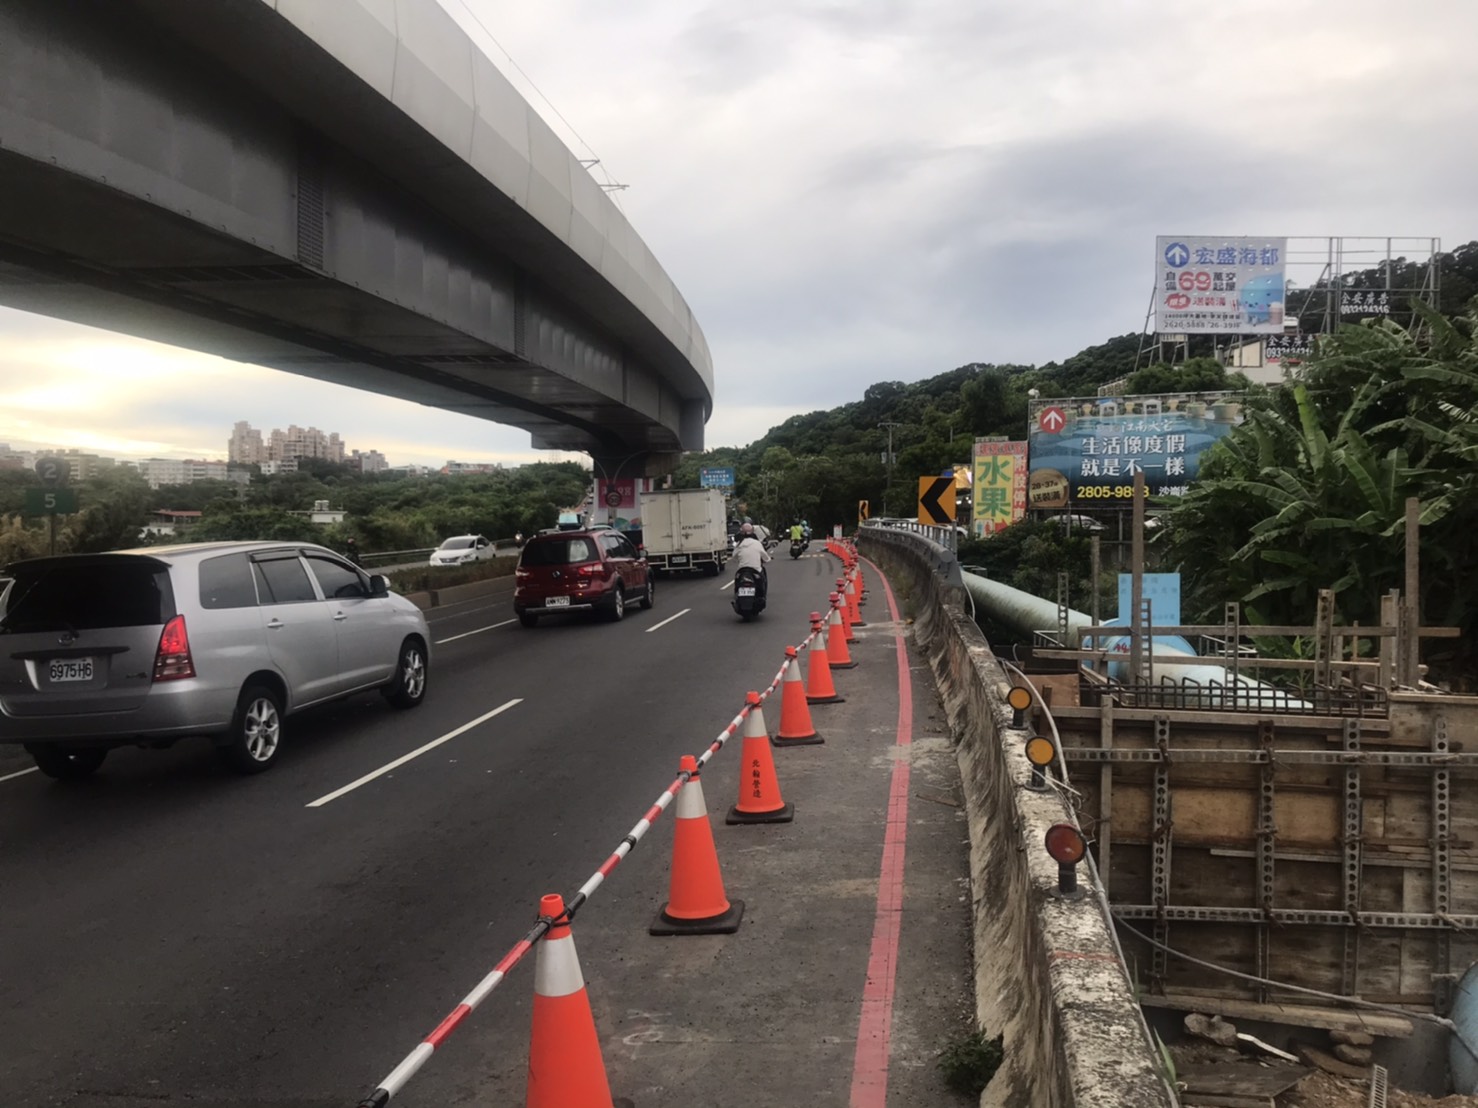 以上為淡海新市鎮正在興建米蘭橋人行橋工程